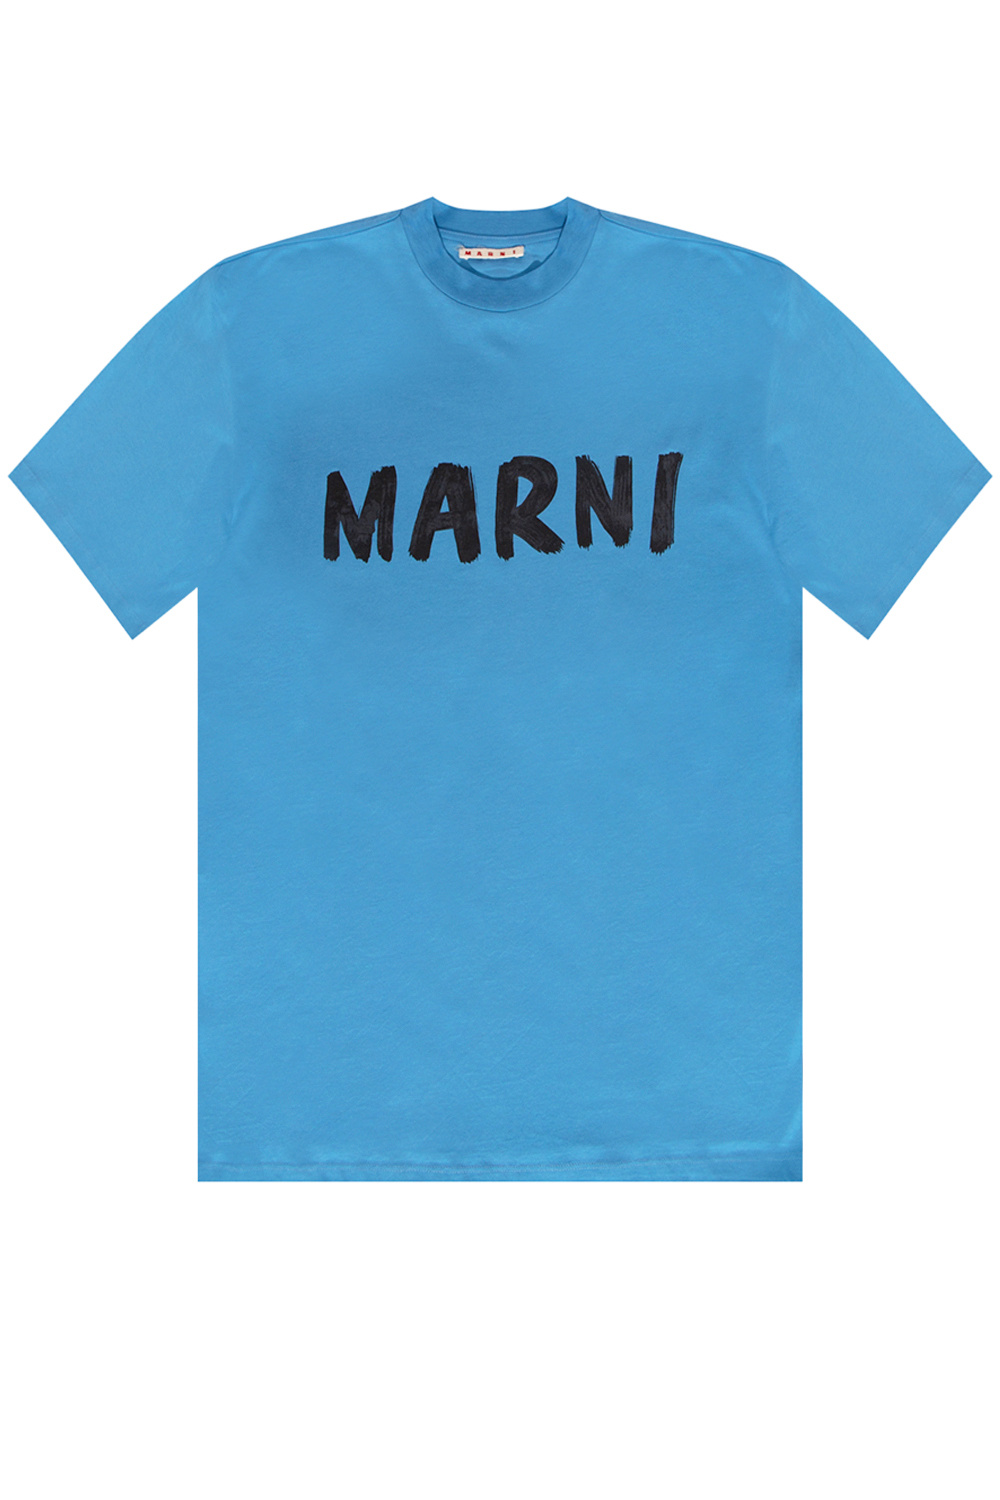 Marni Logo T-shirt | Women's Clothing | IetpShops